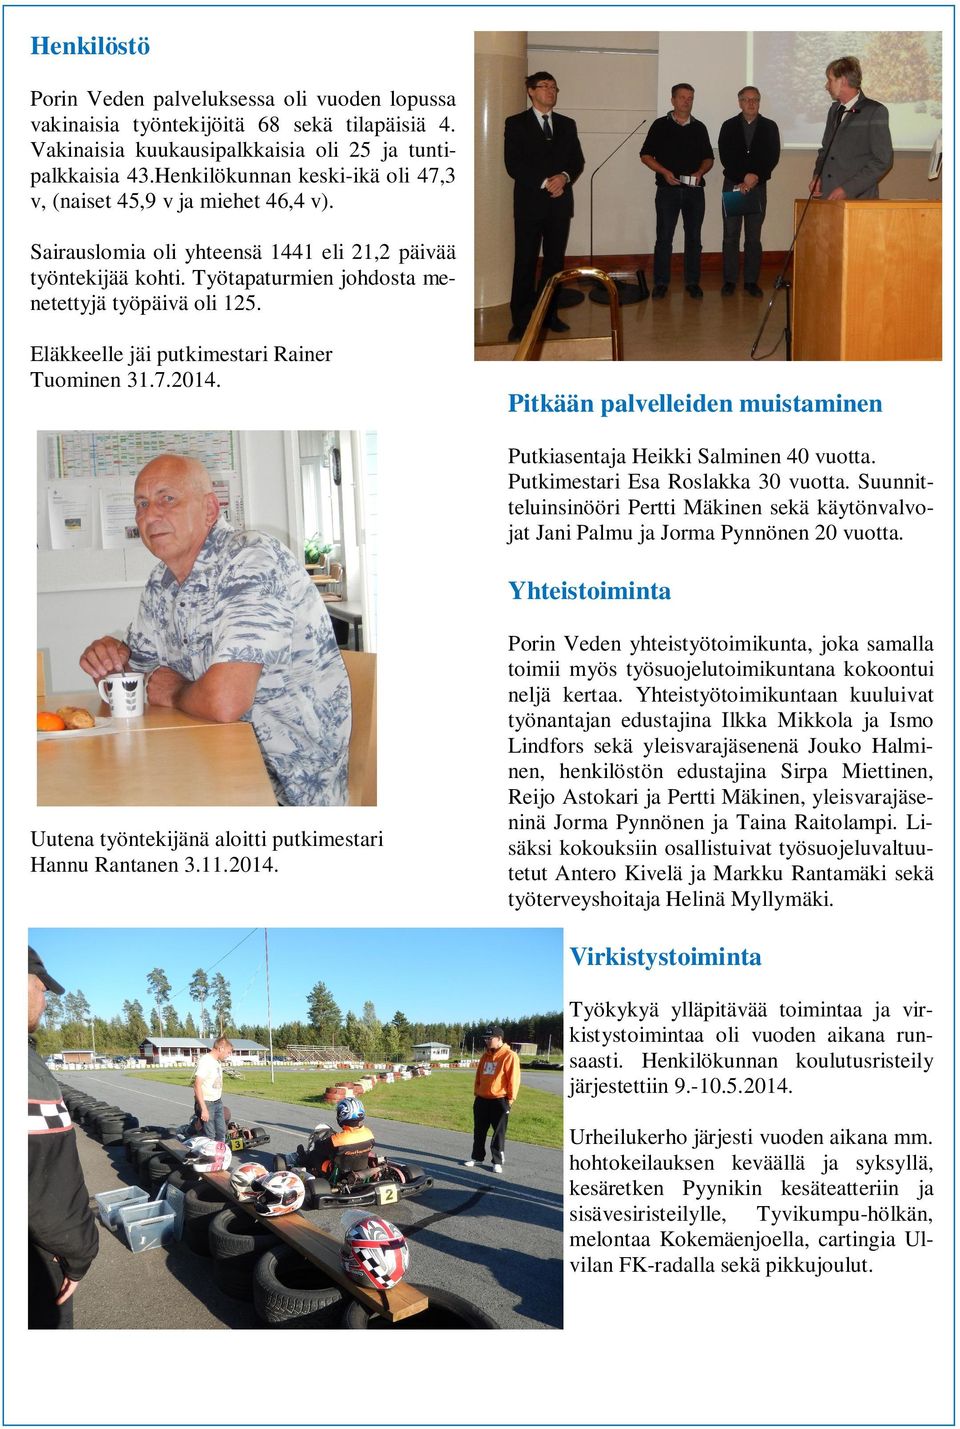 Eläkkeelle jäi putkimestari Rainer Tuominen 31.7.2014. Pitkään palvelleiden muistaminen Putkiasentaja Heikki Salminen 40 vuotta. Putkimestari Esa Roslakka 30 vuotta.